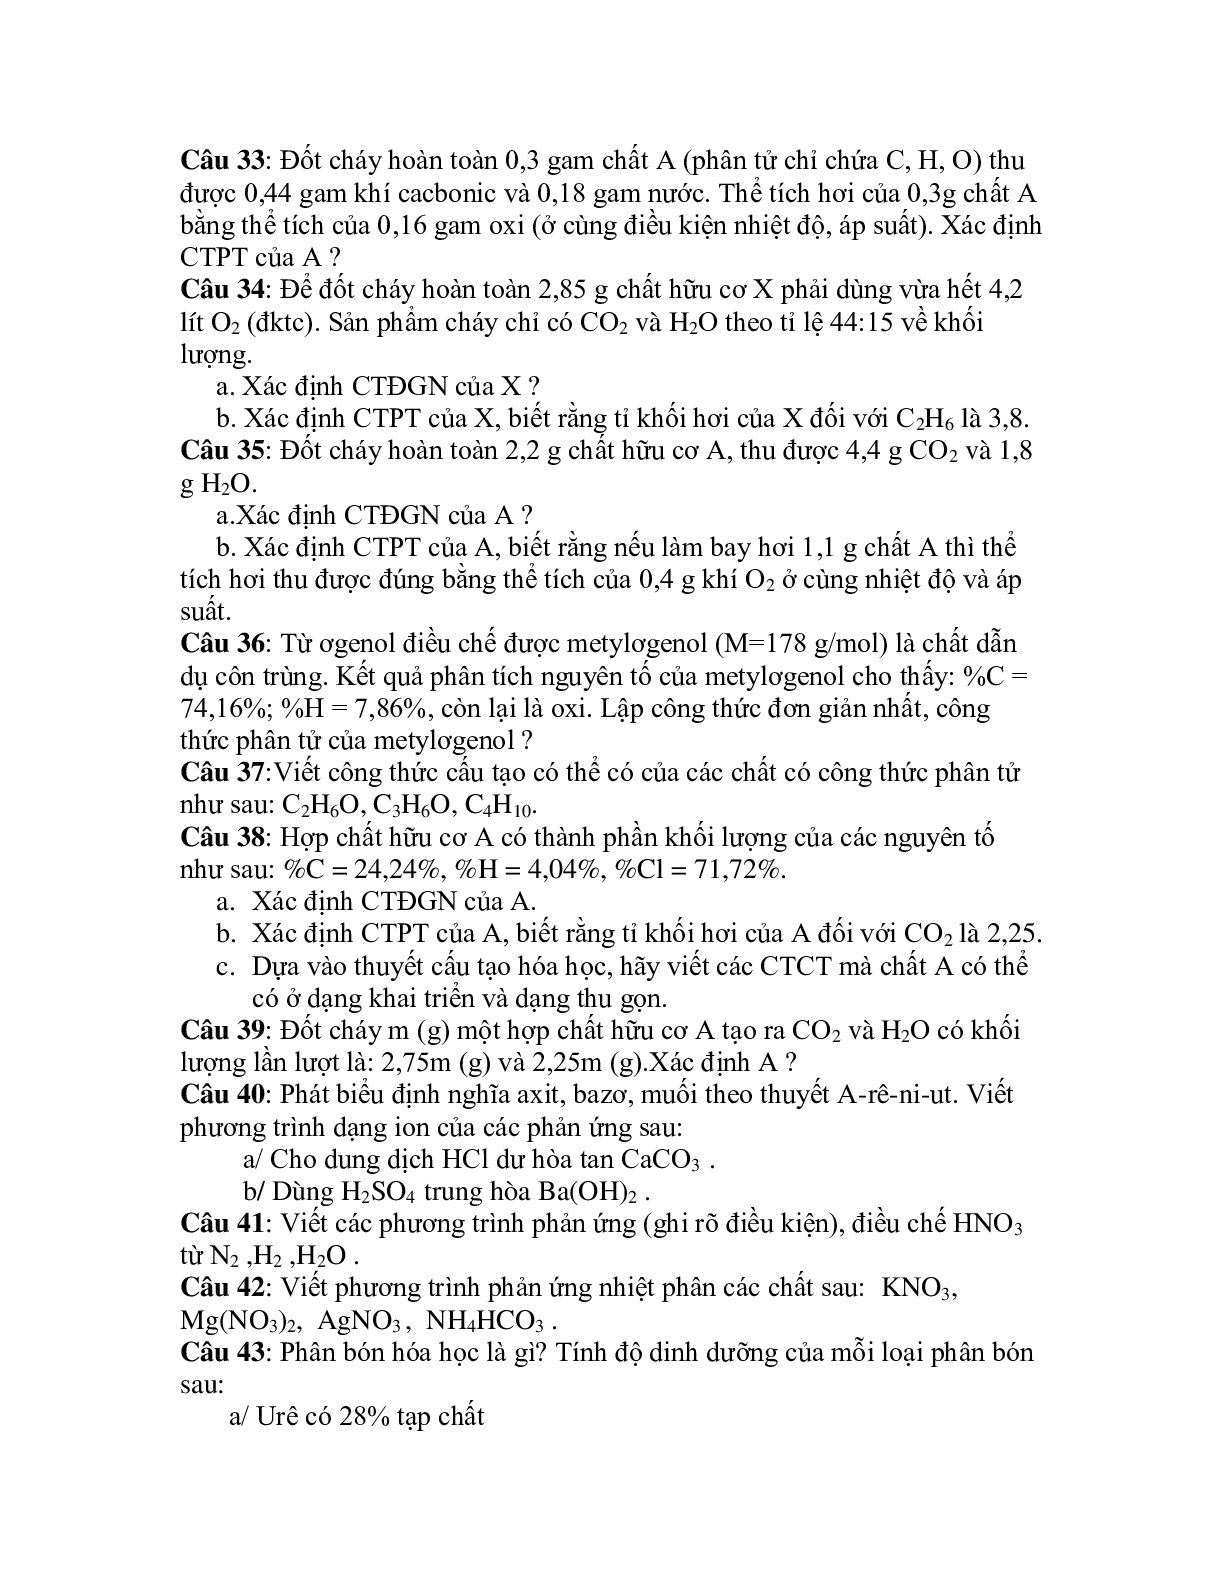 50 bài tập về ôn tập HK 2 lớp 11 chọn lọc (trang 4)